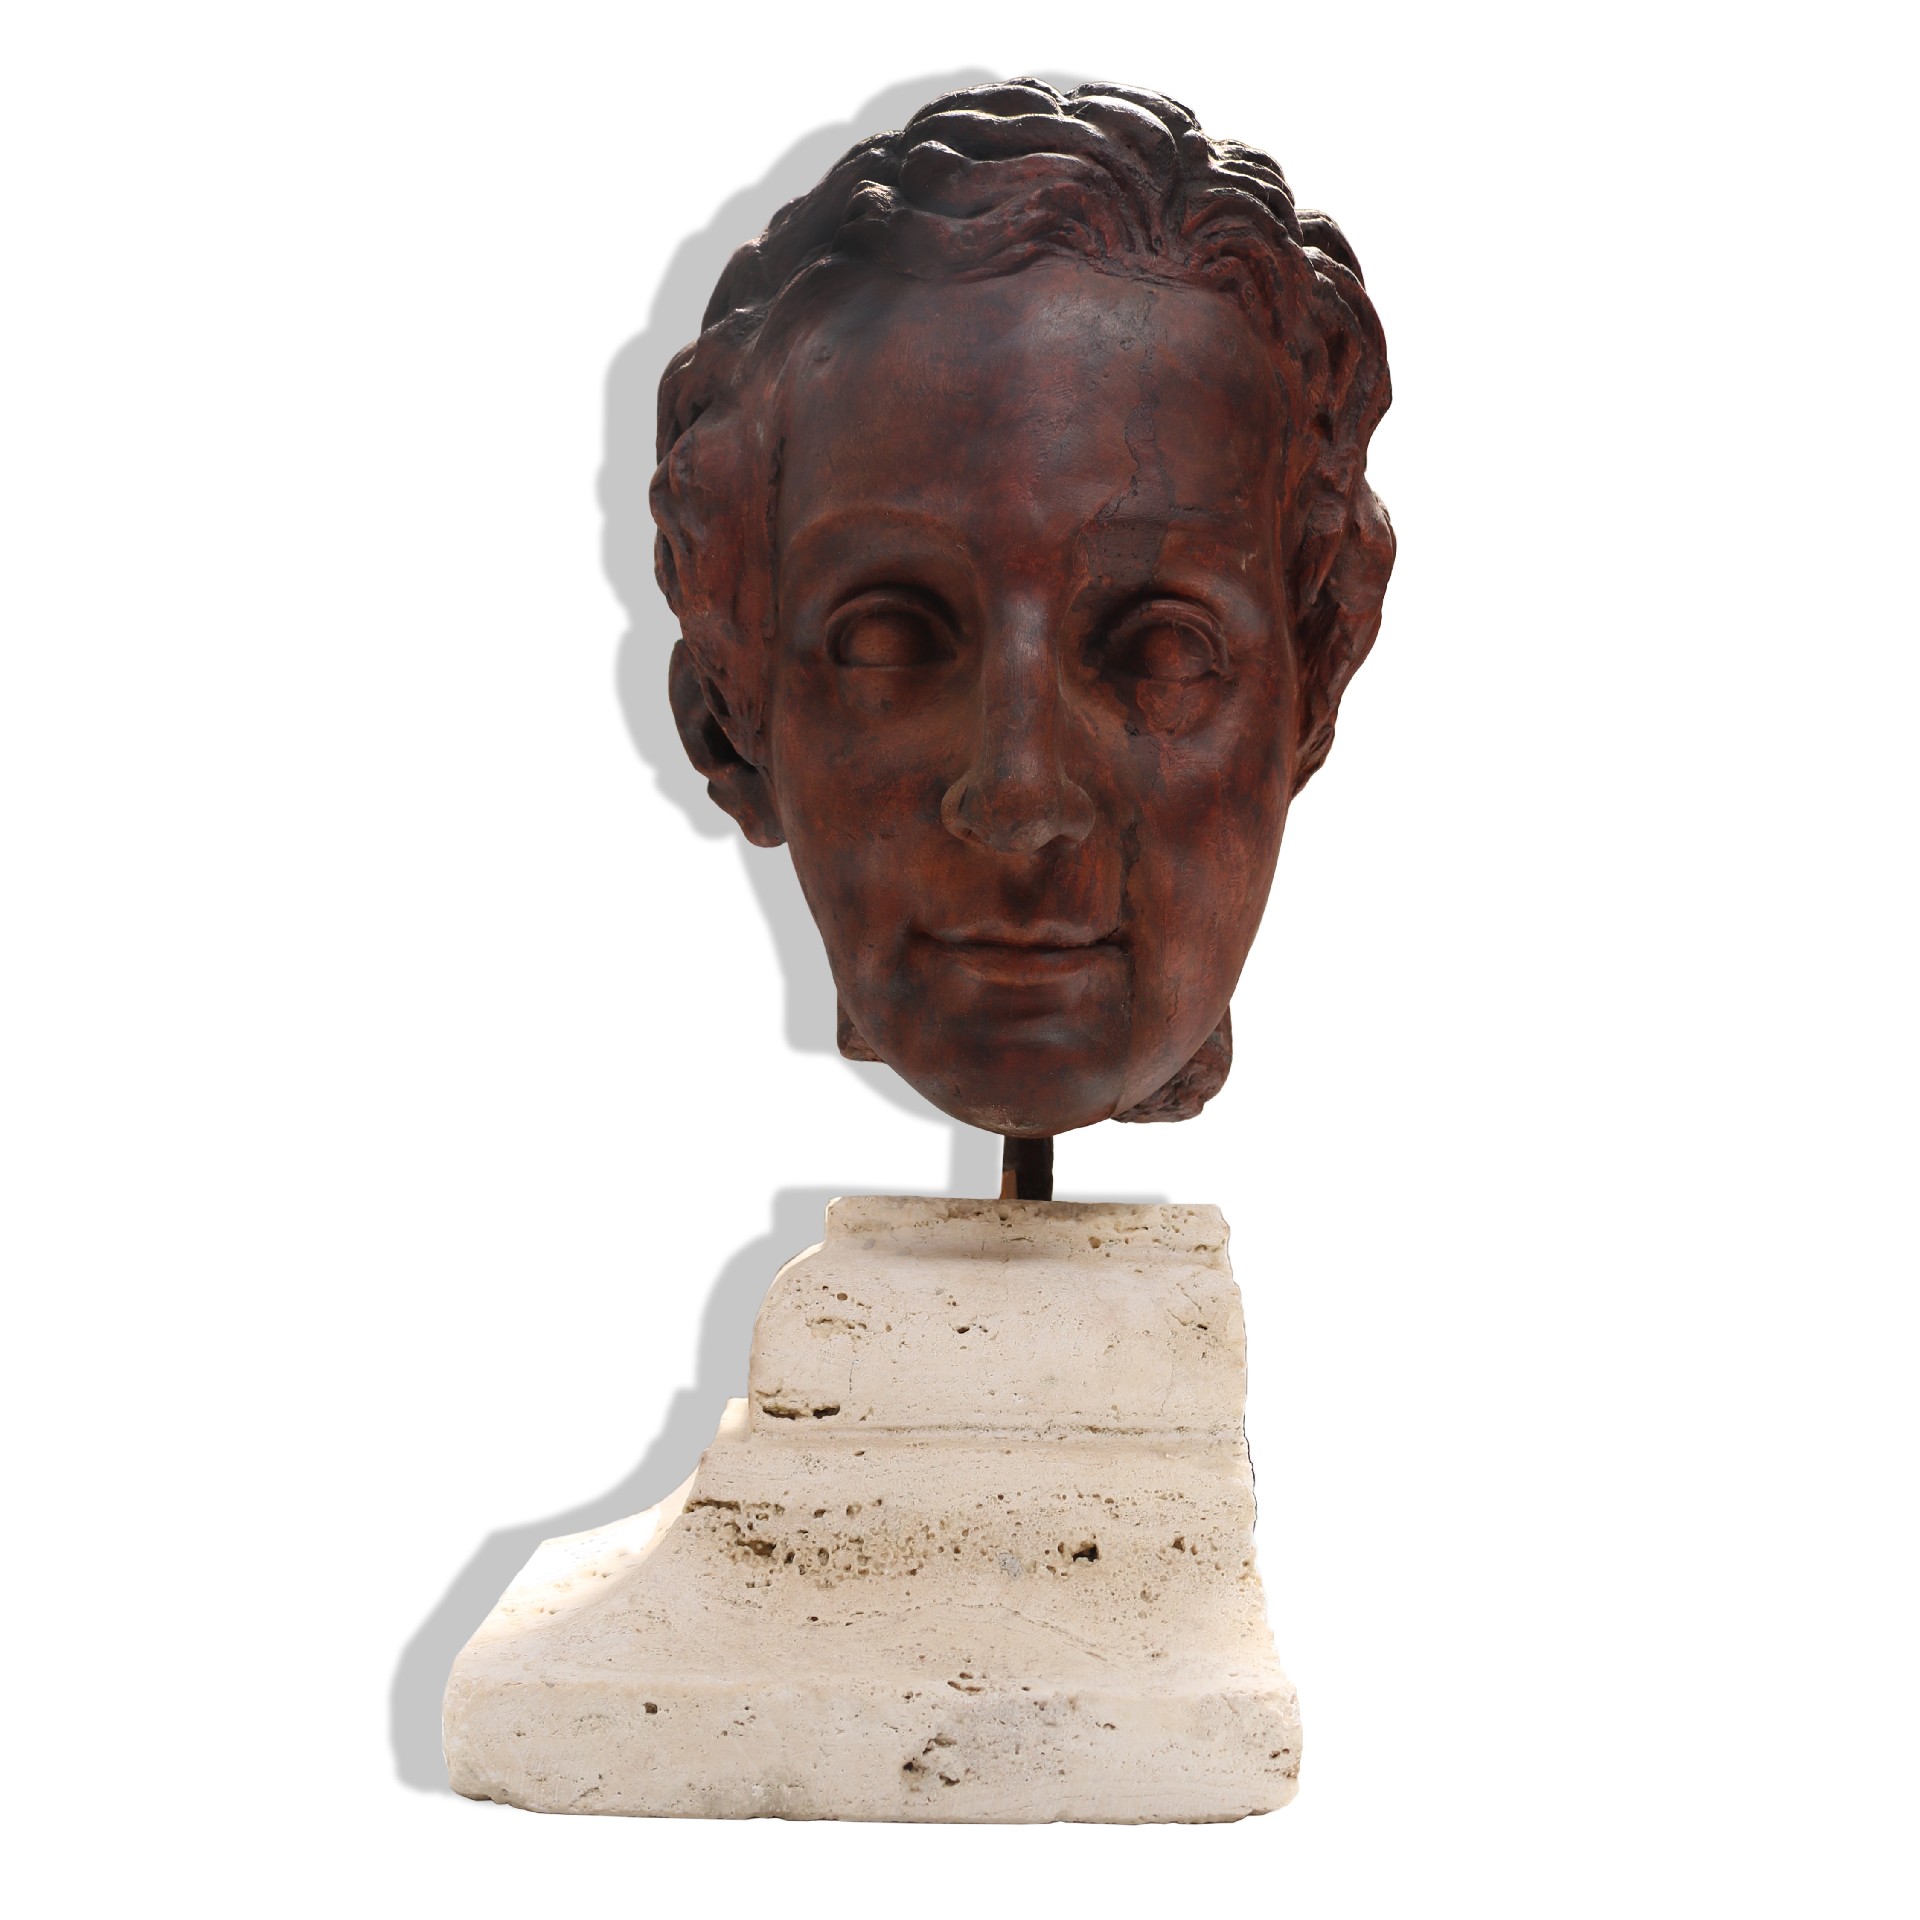 Antica scultura di testa in terracotta.  - Statue Antiche - Sculture Antiche - Prodotti - Antichità Fiorillo